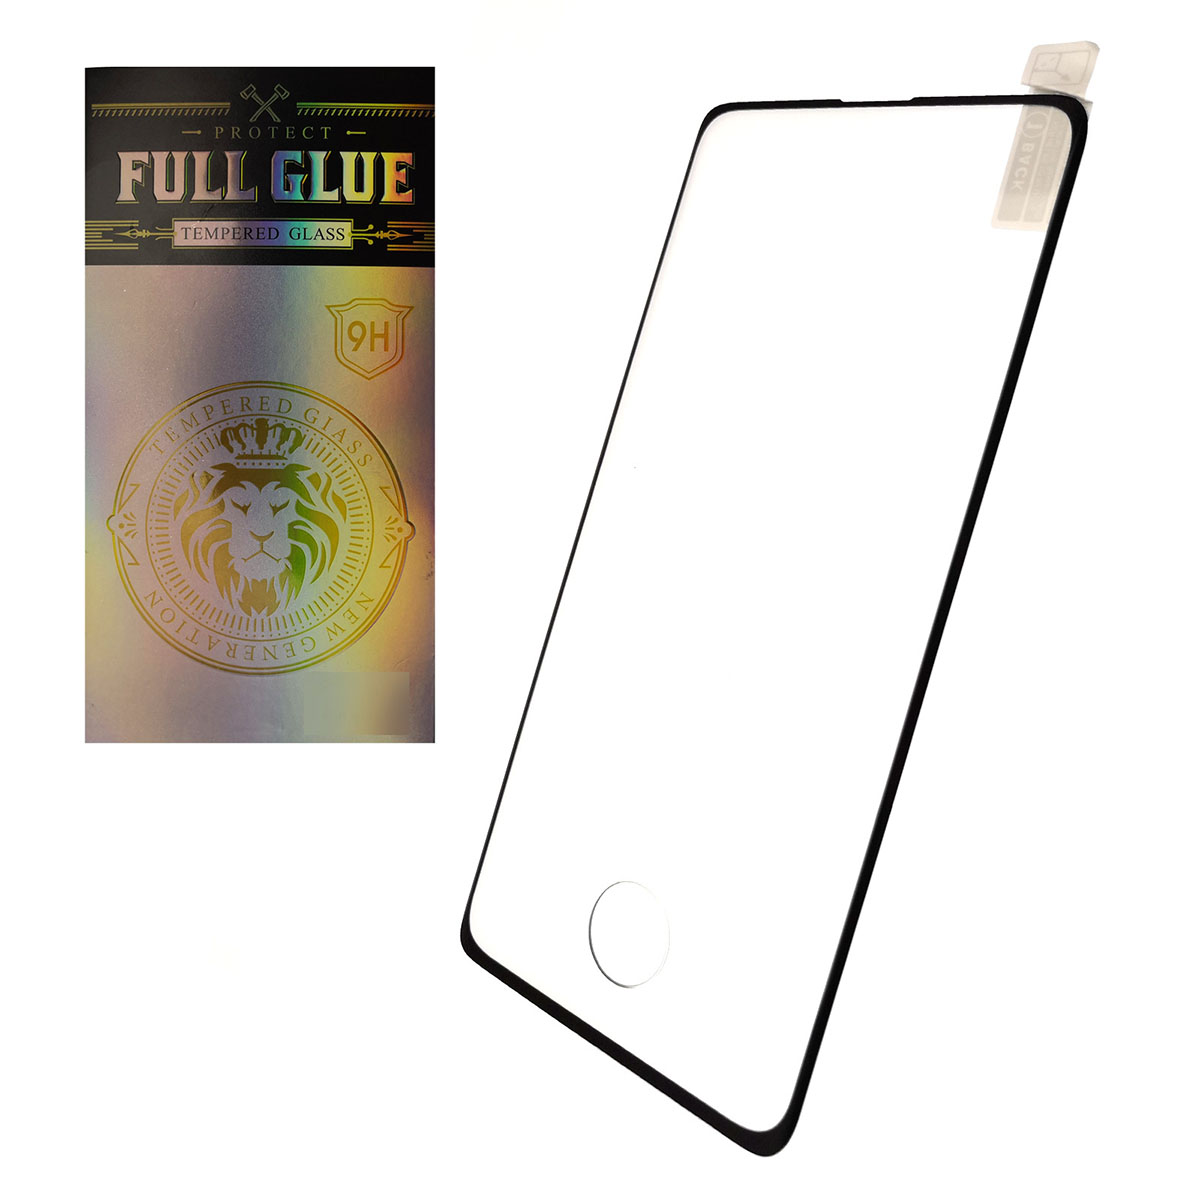 Защитное стекло PROTECT FULL GLUE 9H для SAMSUNG Galaxy S10 Plus (SM-G975),полная проклейка, с вырезом под отпечаток пальца, цвет окантовки черный.